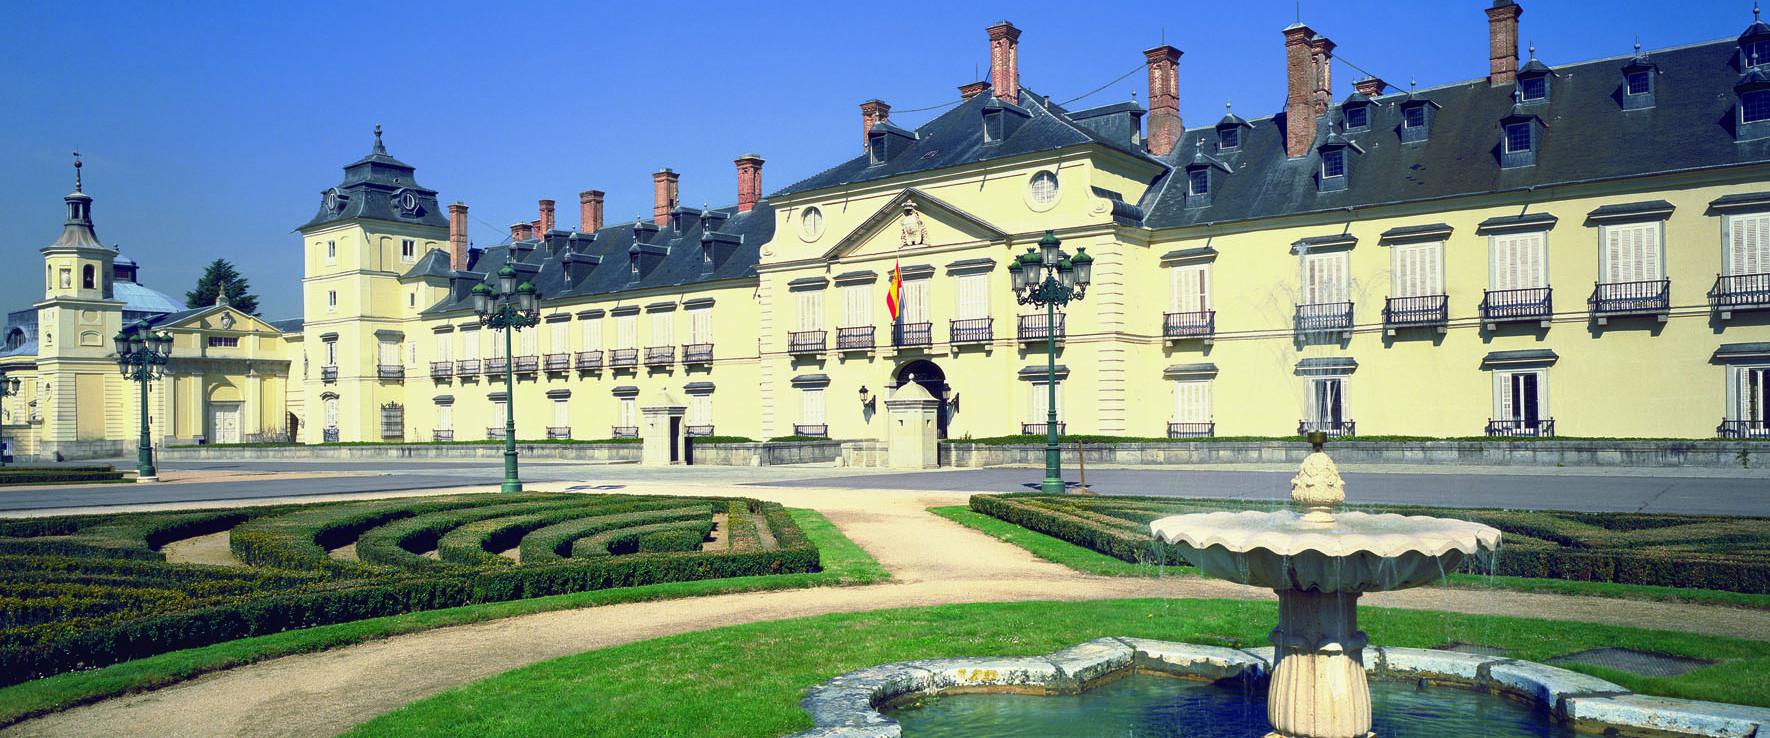 Palacio Real de El Pardo | Patrimonio Nacional